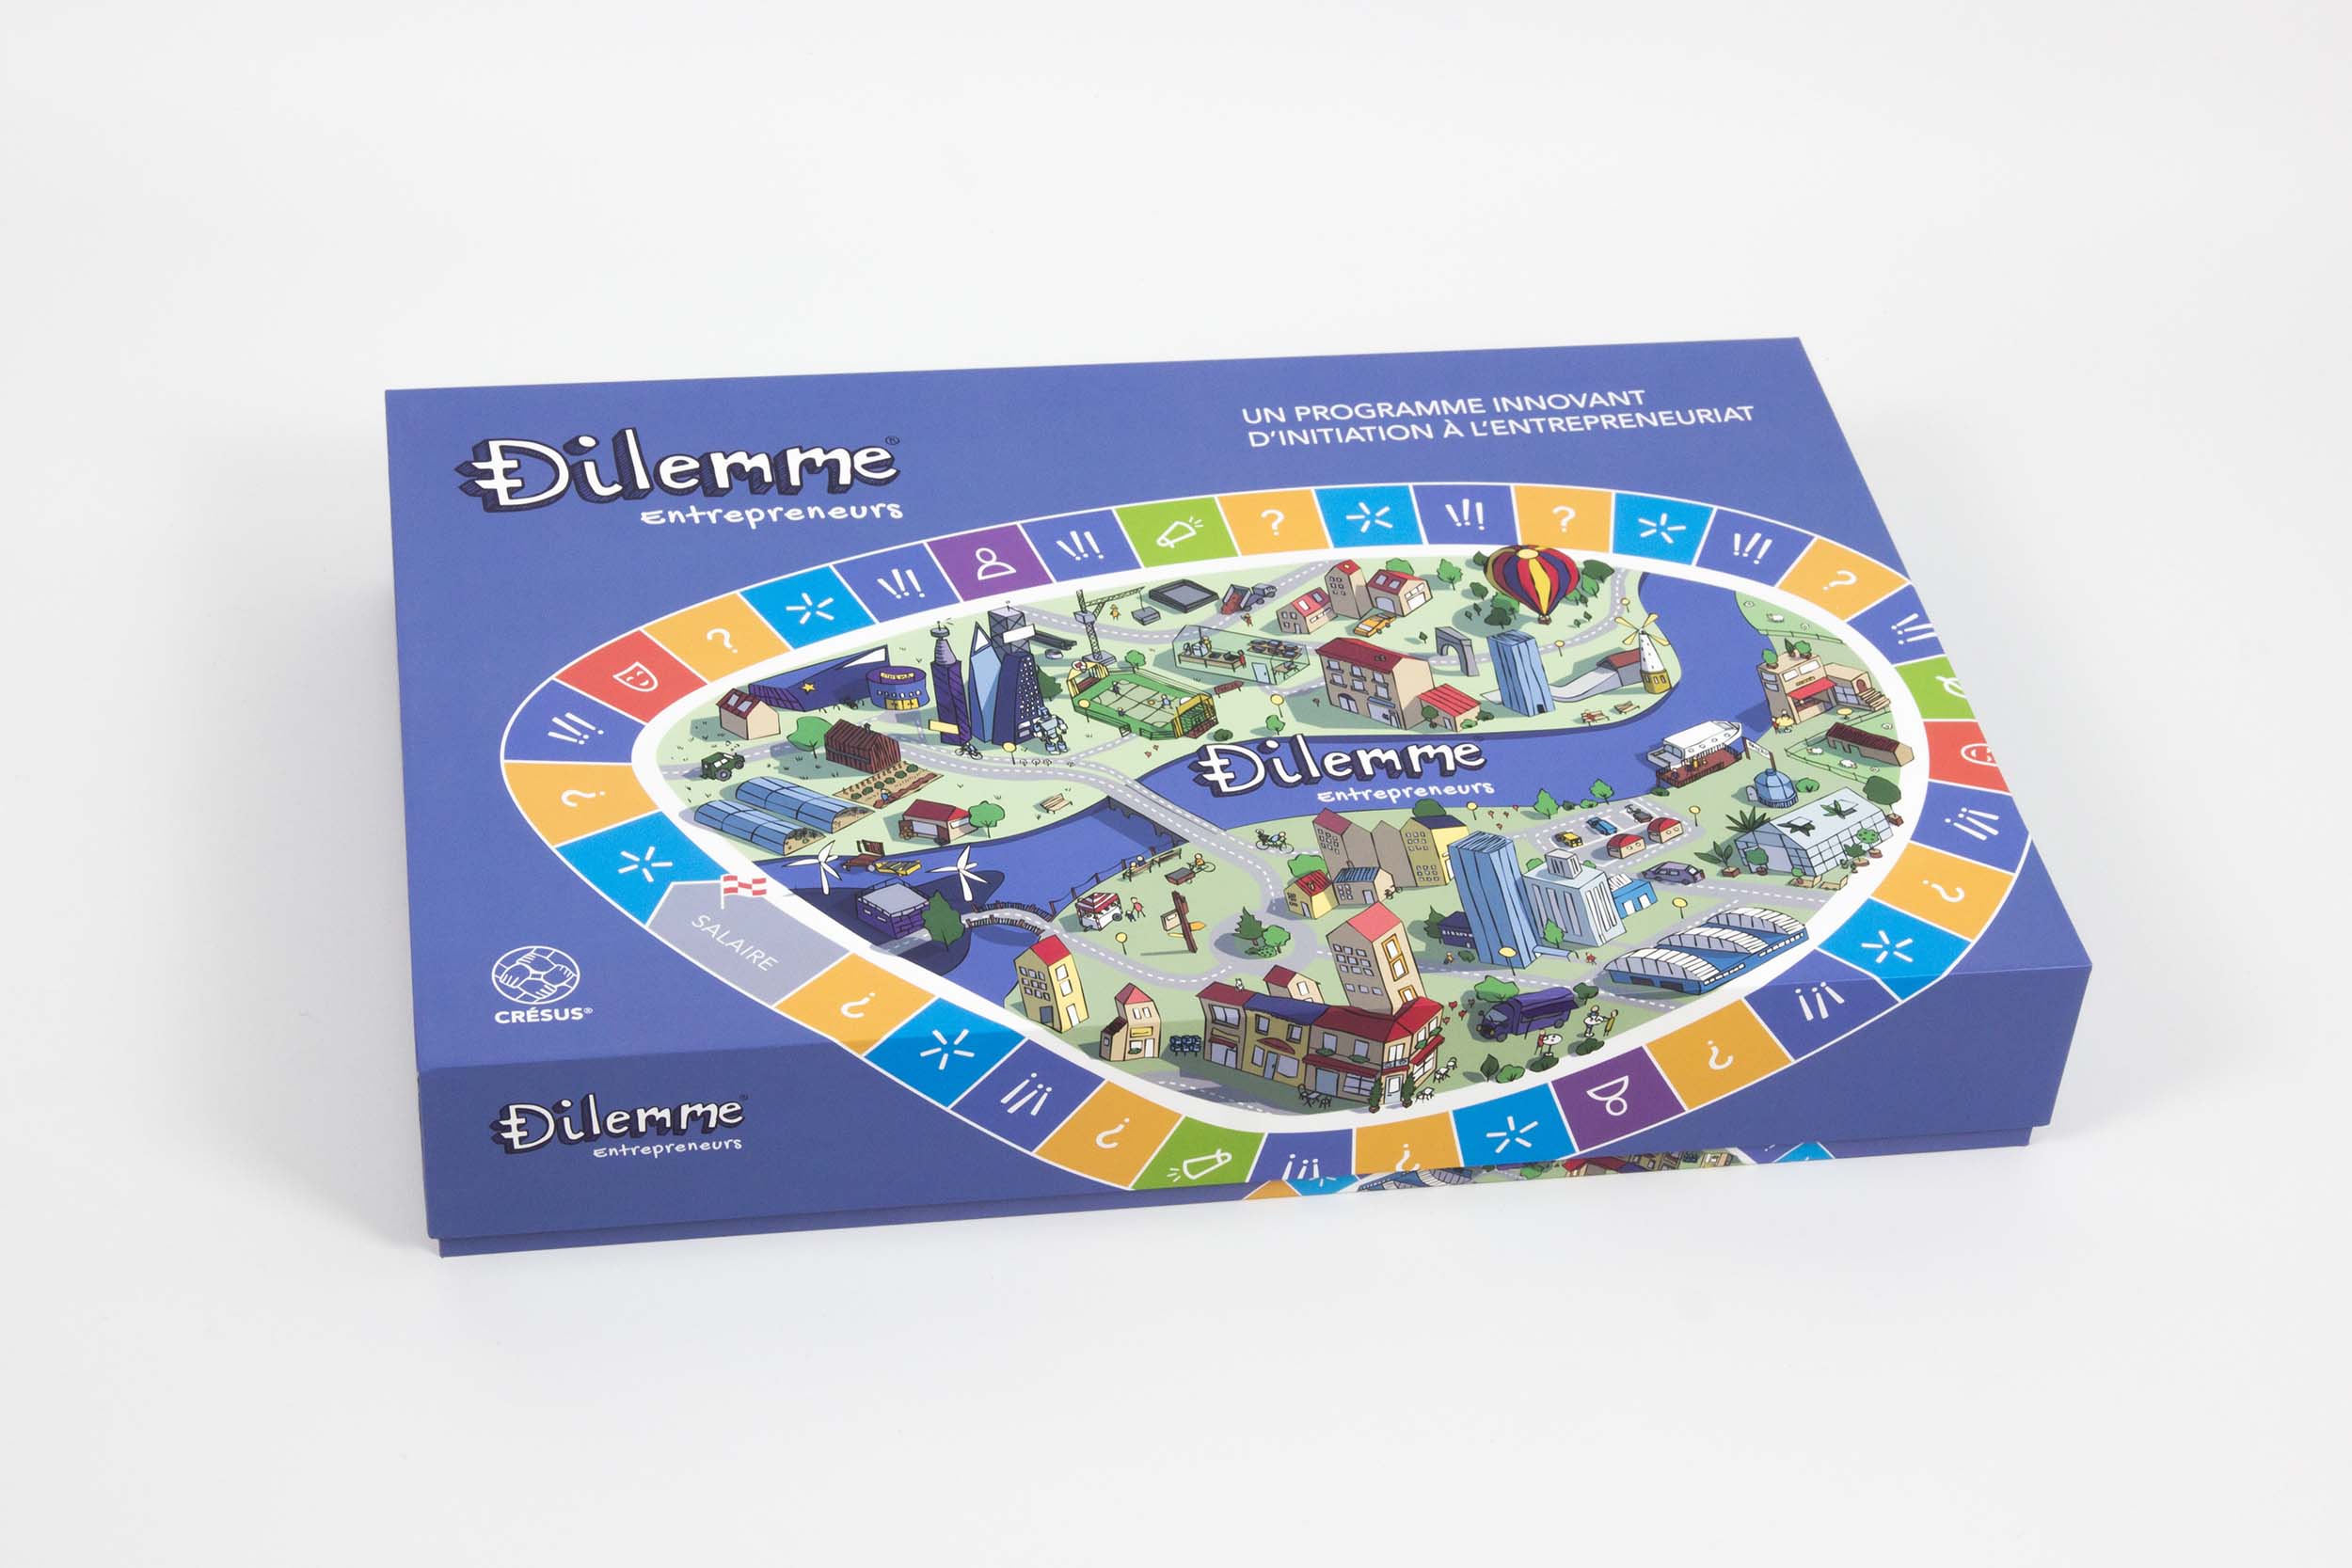 Face avant de la boîte carton du jeu de société pédagogique Dilemme Entrepreneurs, très colorée : fond bleu, et aperçu du plateau illustré